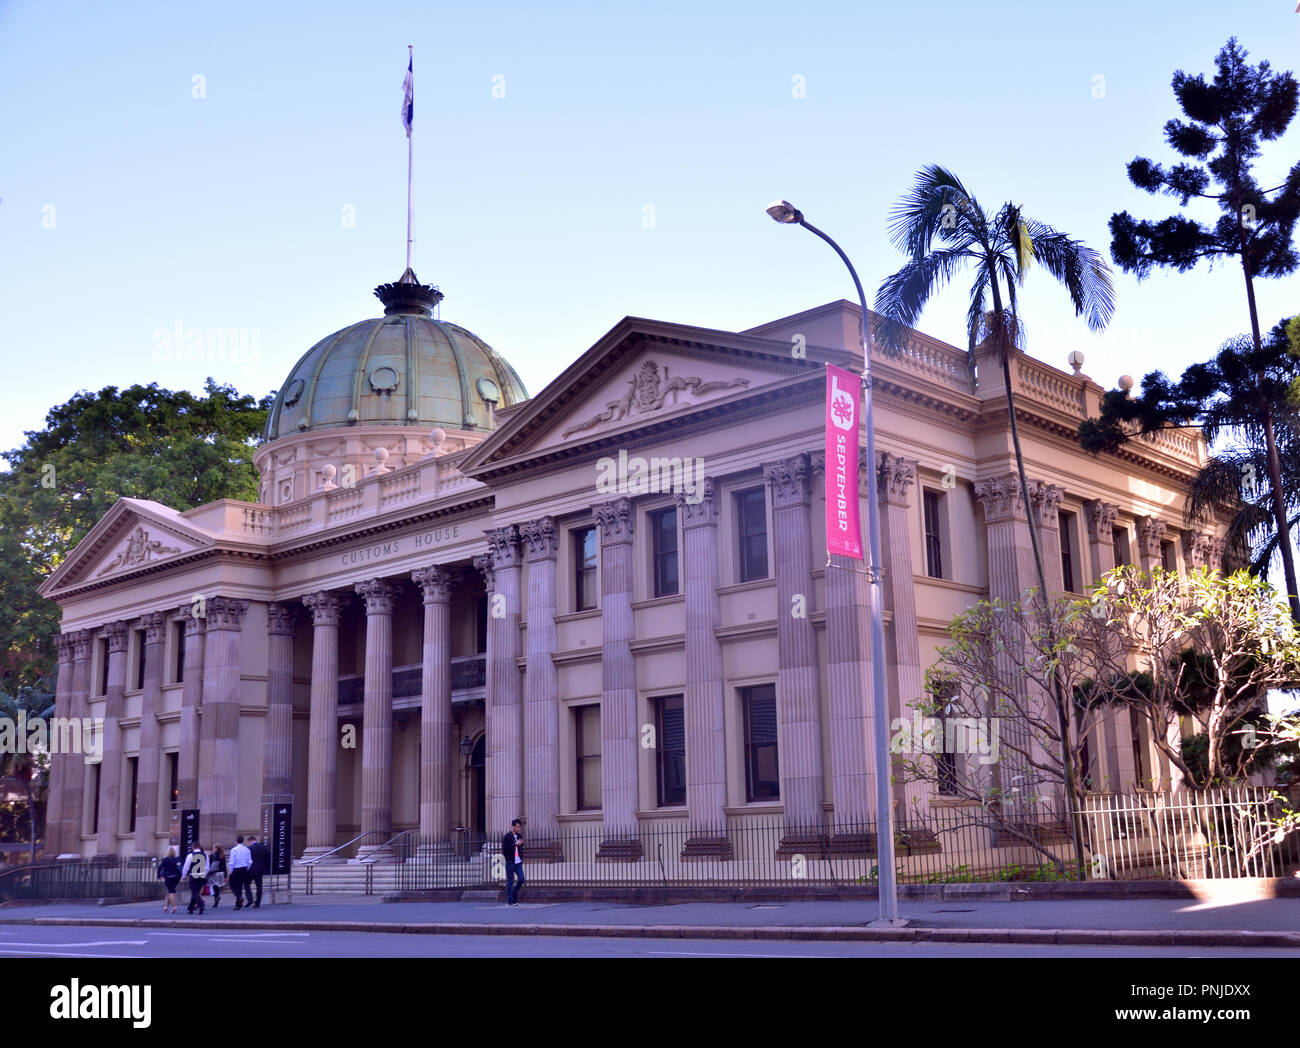 Customs House, historischen Gebäude, das von den Brisbane River, dient jetzt als multifunktionaler Veranstaltungsort, Brisbane, Australien Stockfoto